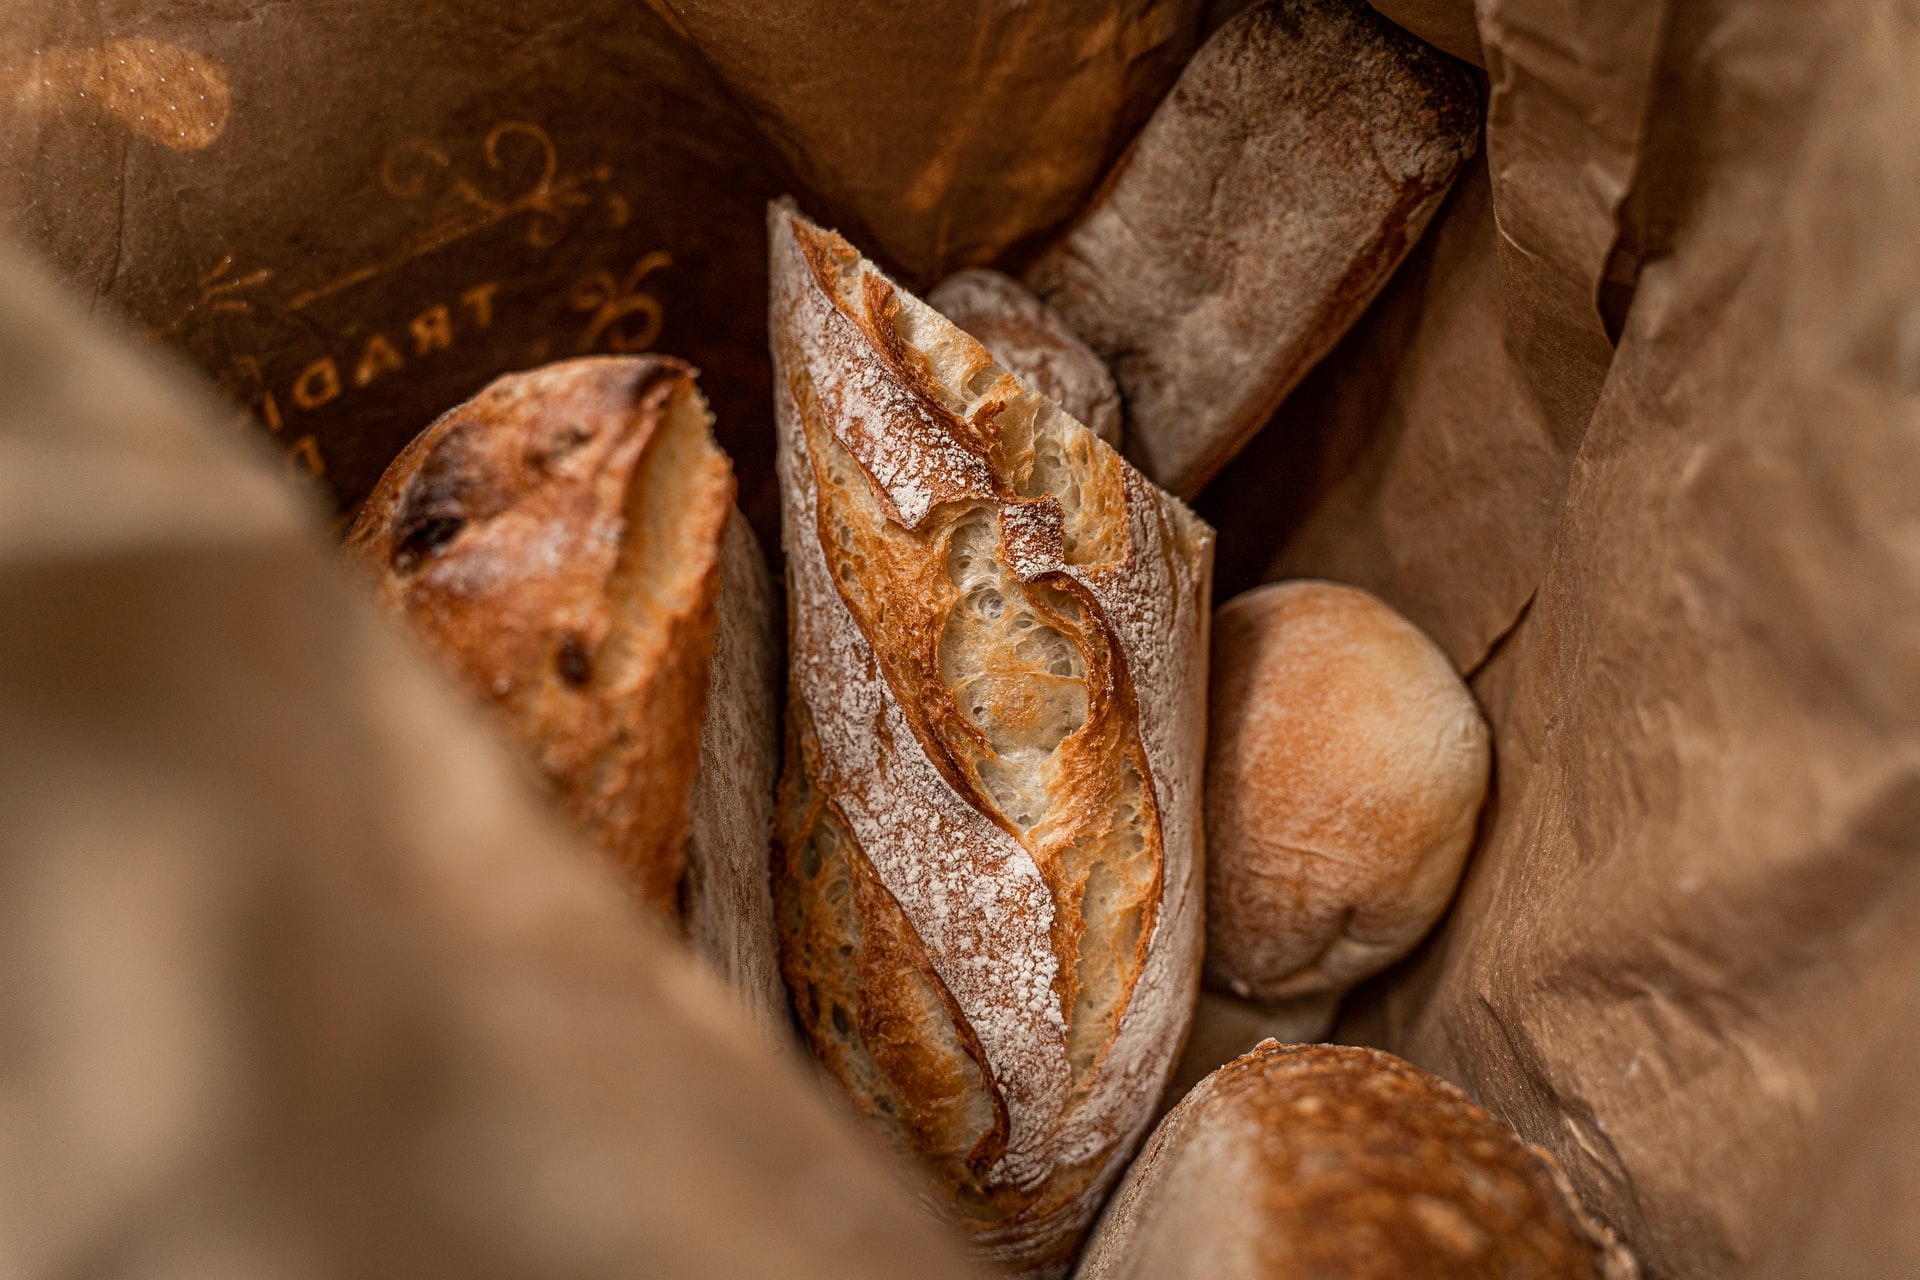 Χανιά: Ποια εναλλακτική βρίσκεται στο τραπέζι για να αποφευχθεί και άλλη αύξηση στο ψωμί